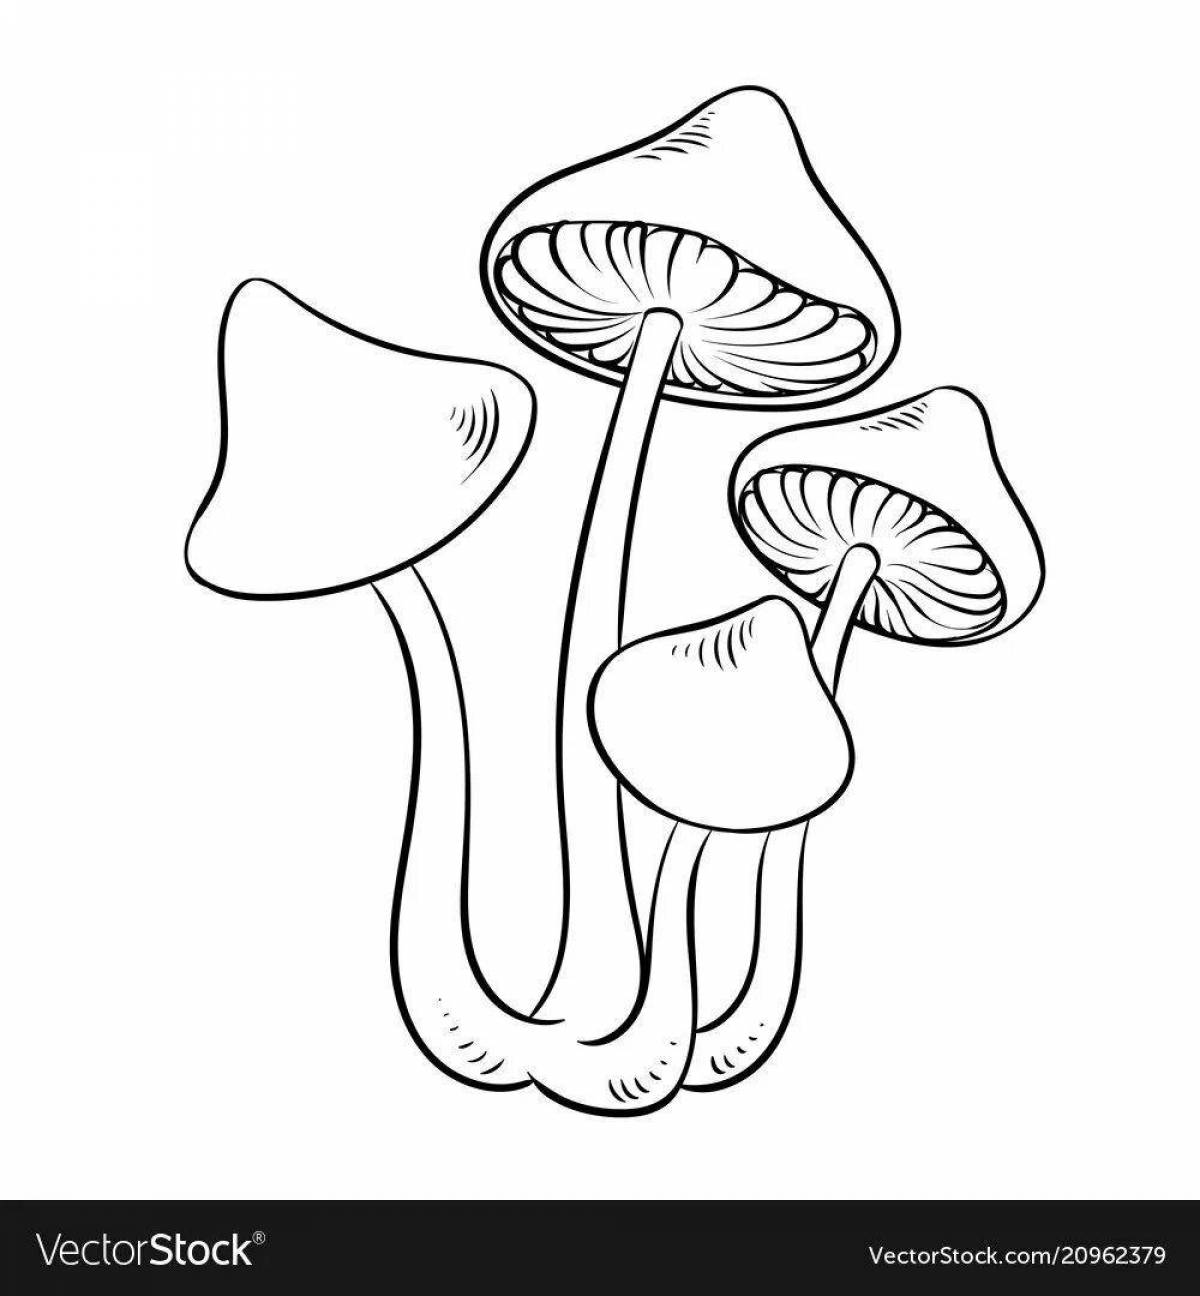 Elegant toadstool mushrooms